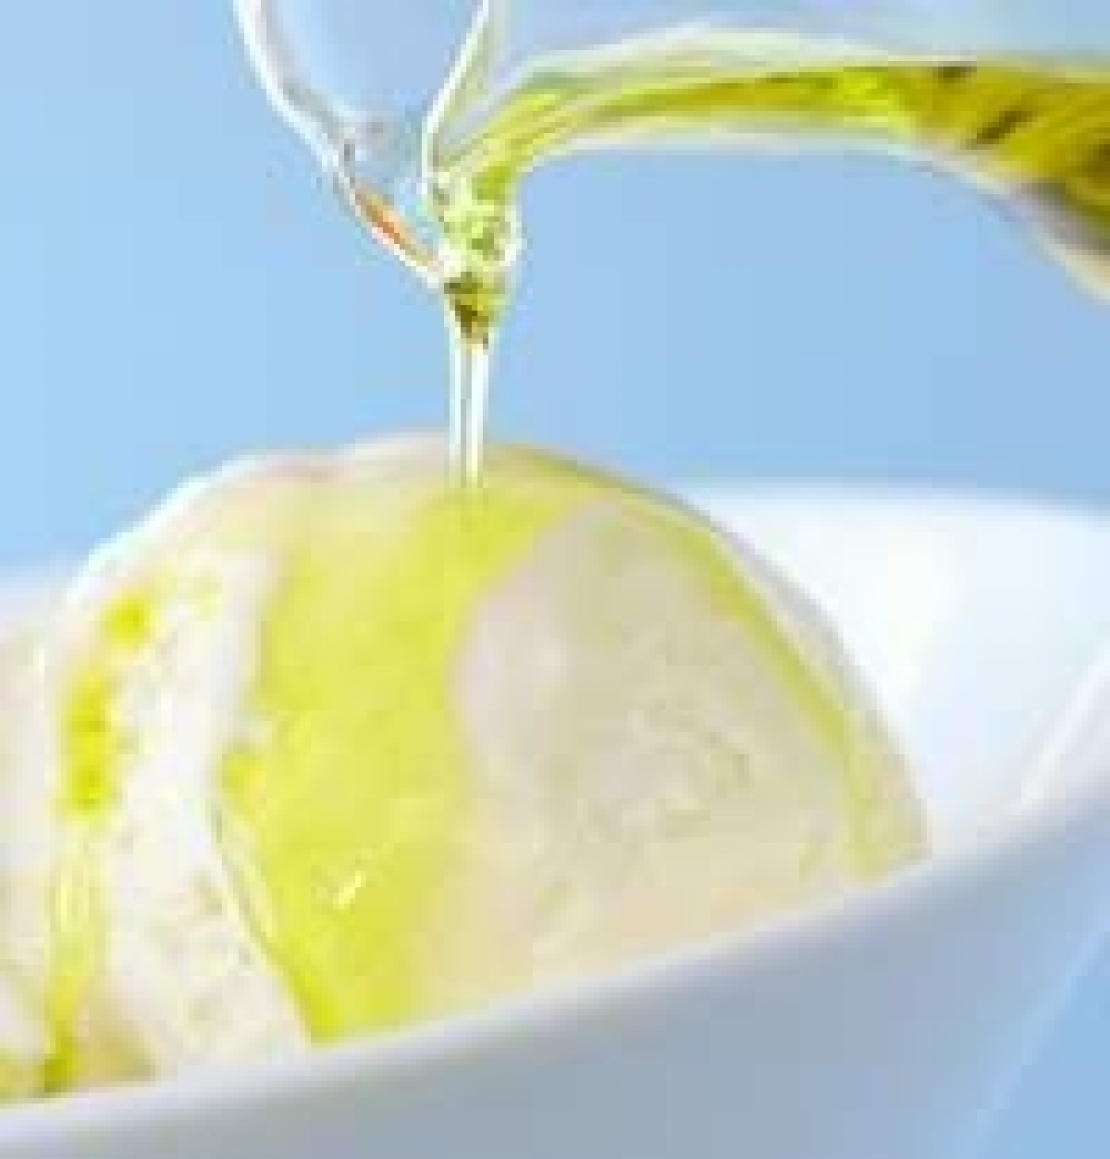 Il gelato all'olio d'oliva è "strepitoso", parola di Susan Sarandon